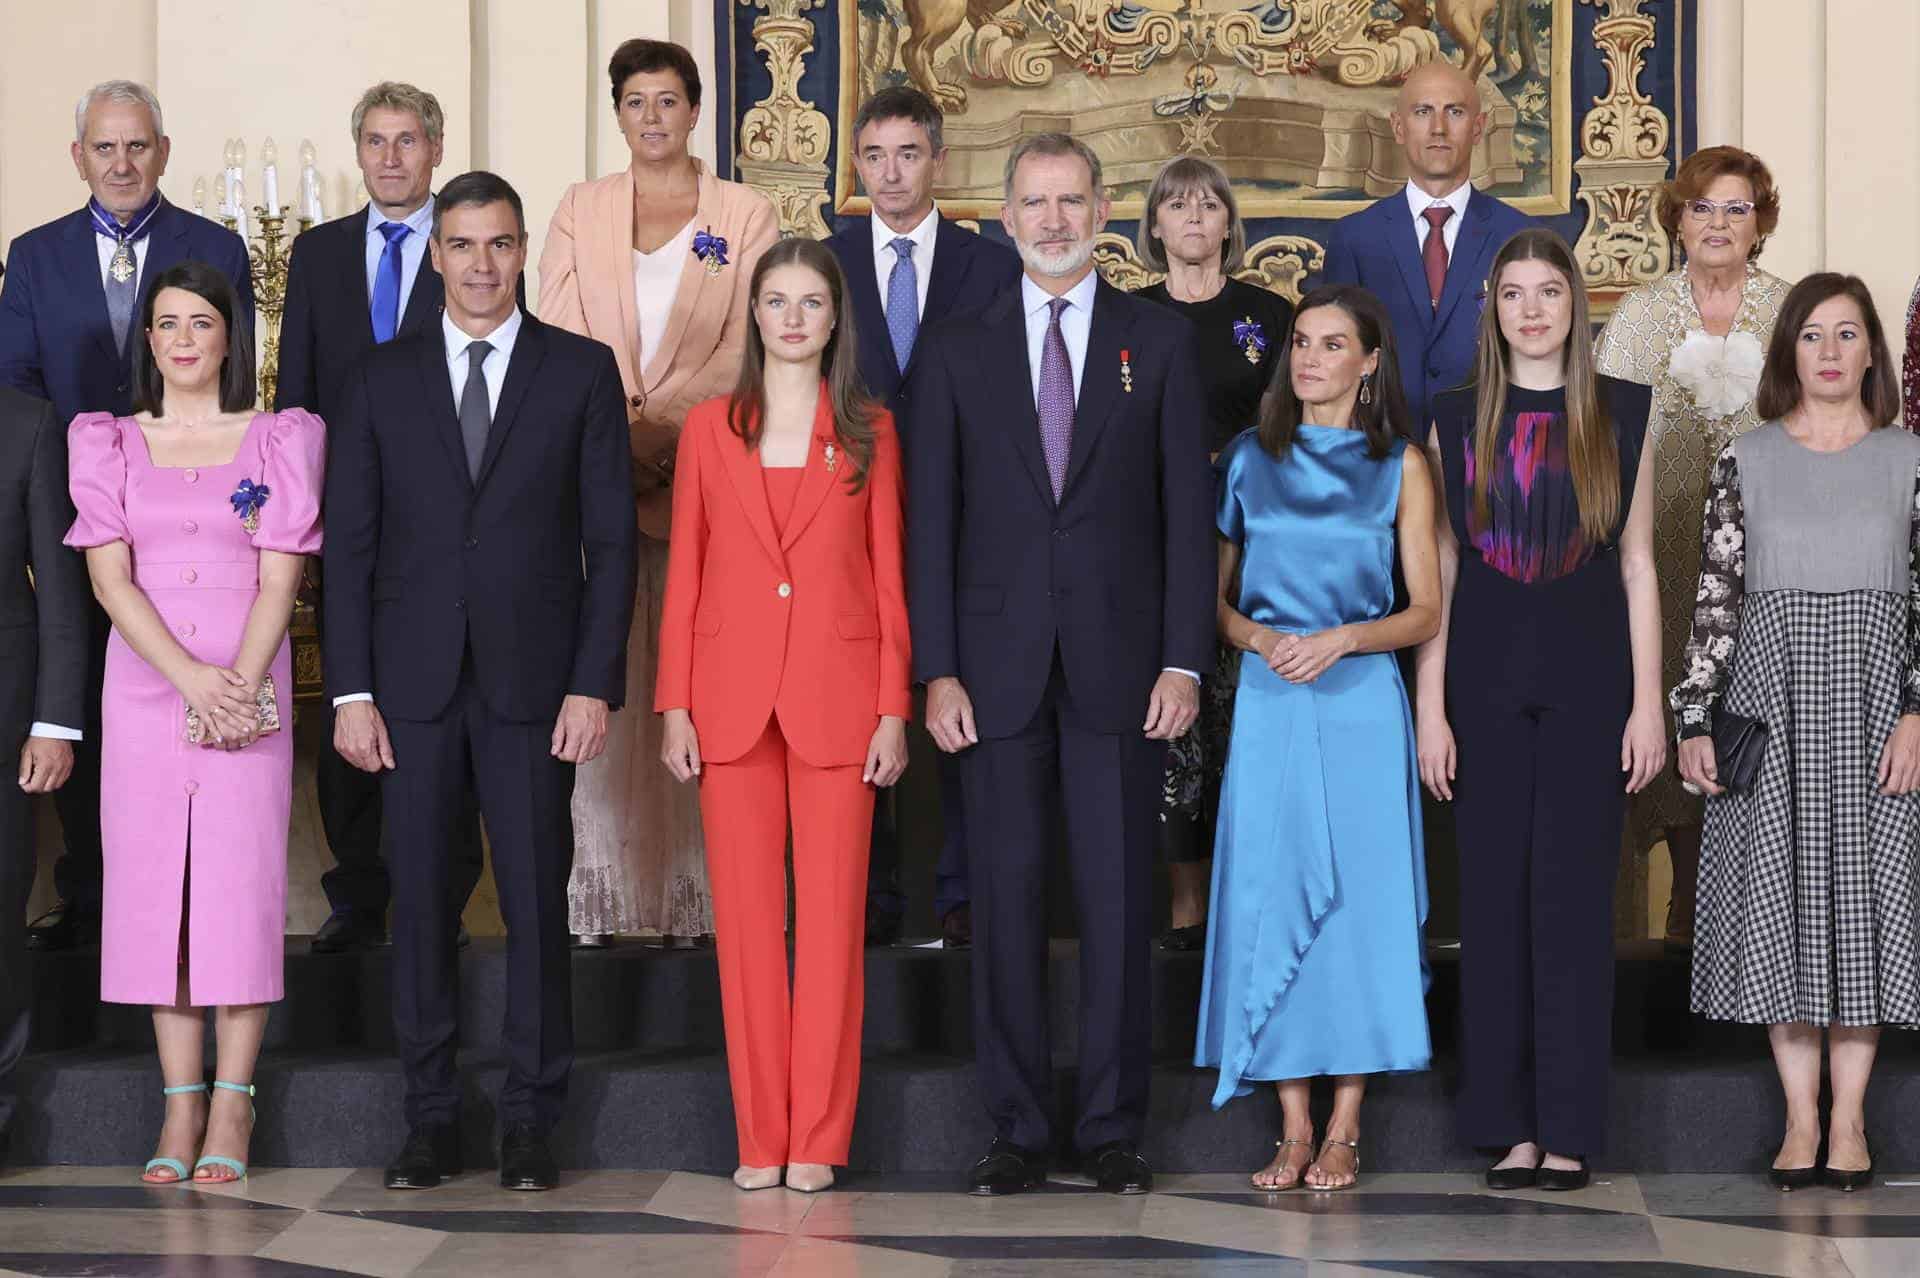  El rey Felipe VI (c) junto a su hija Leonor princesa de Asturias (3i), la infanta Sofía (2d), la reina Letizia (3d), el presidente del gobierno, Pedro Sánchez (2i), y la presidenta del Congreso, Francina Armegol (d), posan con los galardonados, entre ellos la ingeniera andaluza Elísabet Suérez Vargas (i), quien ha recibido la Cruz de Oficial del Mérito Civil, para la foto de familia de la imposición de condecoraciones al mérito civil en el Palacio Real en Madrid donde se conmemora el décimo aniversario del reinado de Felipe VI.